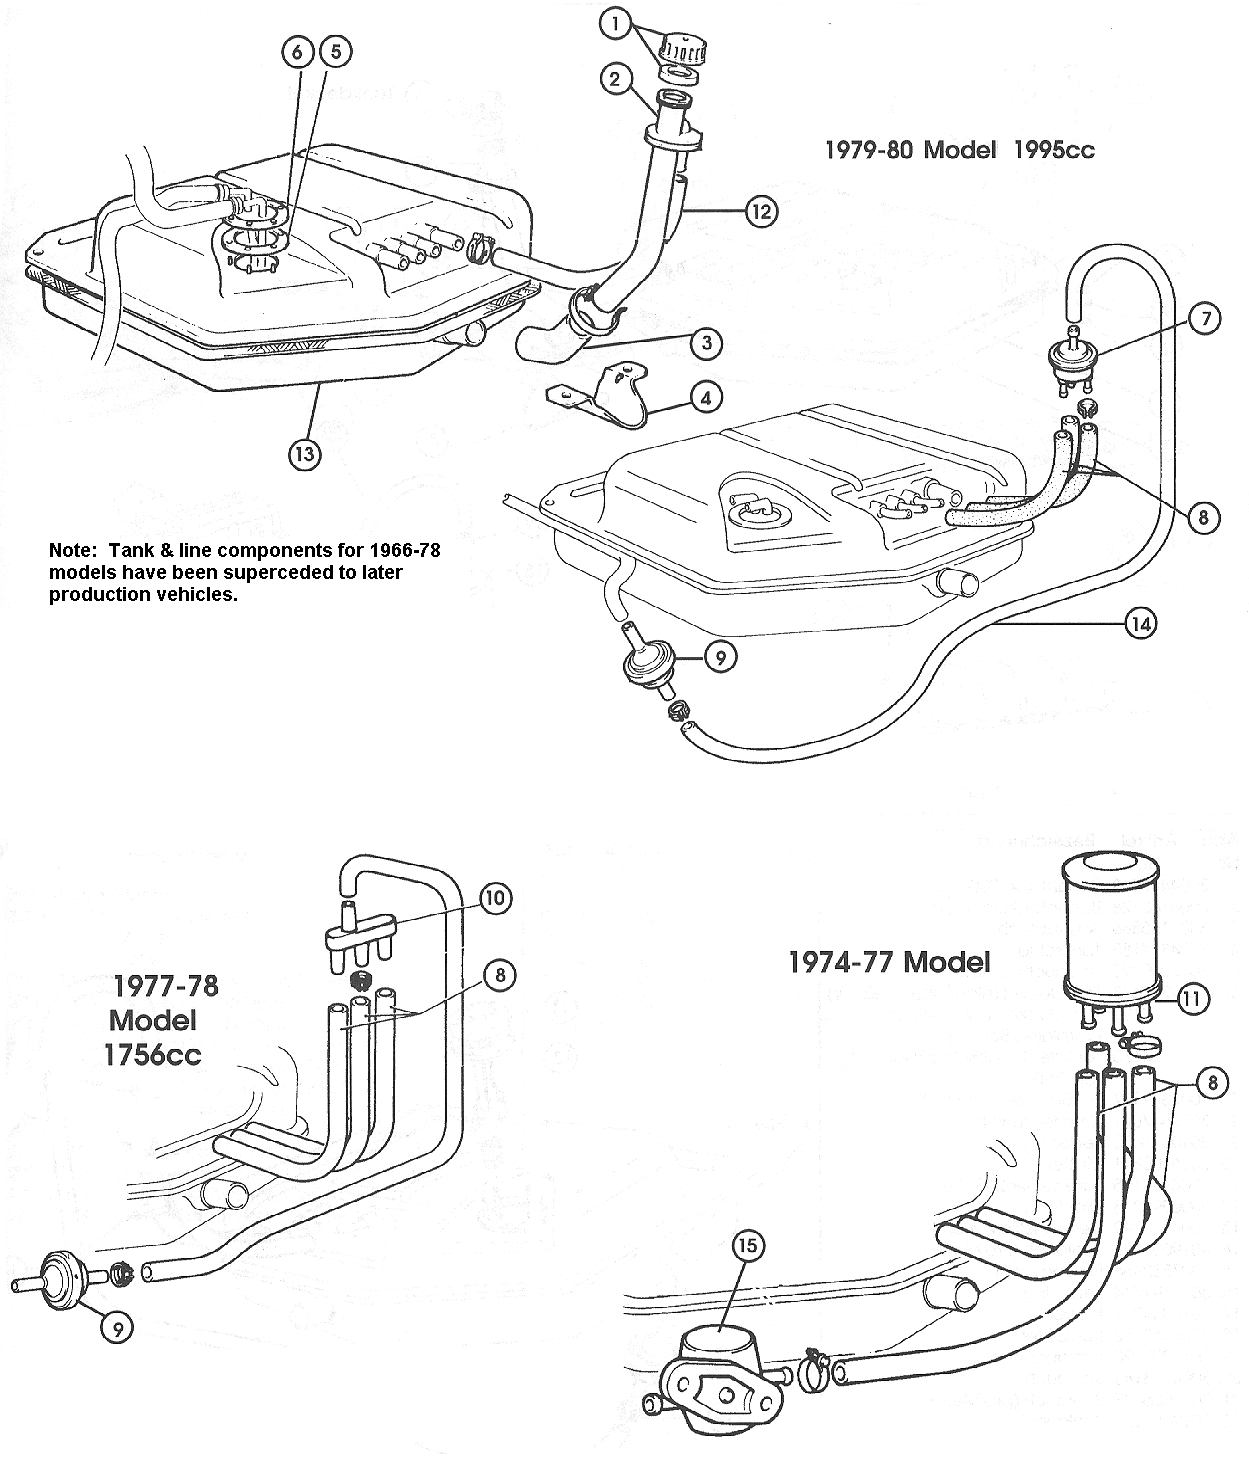 Fuel Tank & Lines – Carburettor Models